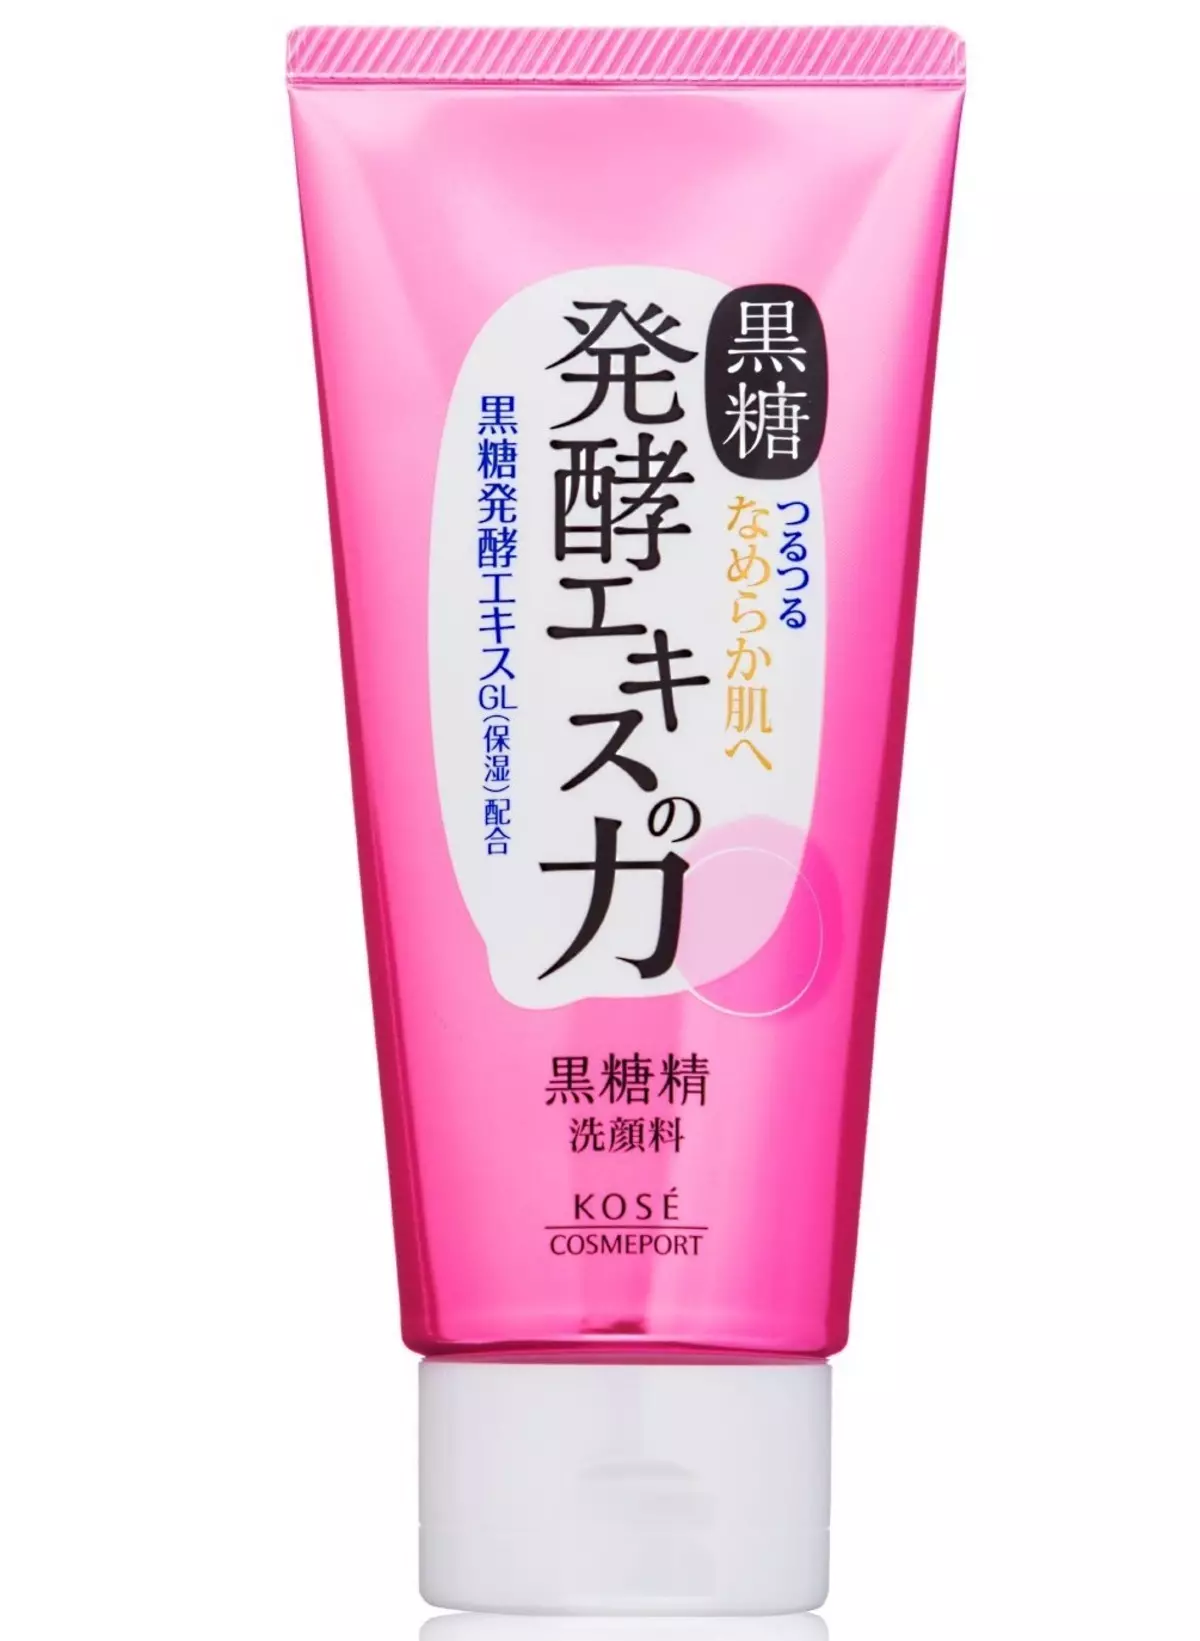 Cosméticos japoneses: mejores marcas de cosméticos de Japón. Rosette, Kose y otros cosméticos profesionales. Revisiones de Cosmetólogos 4498_37